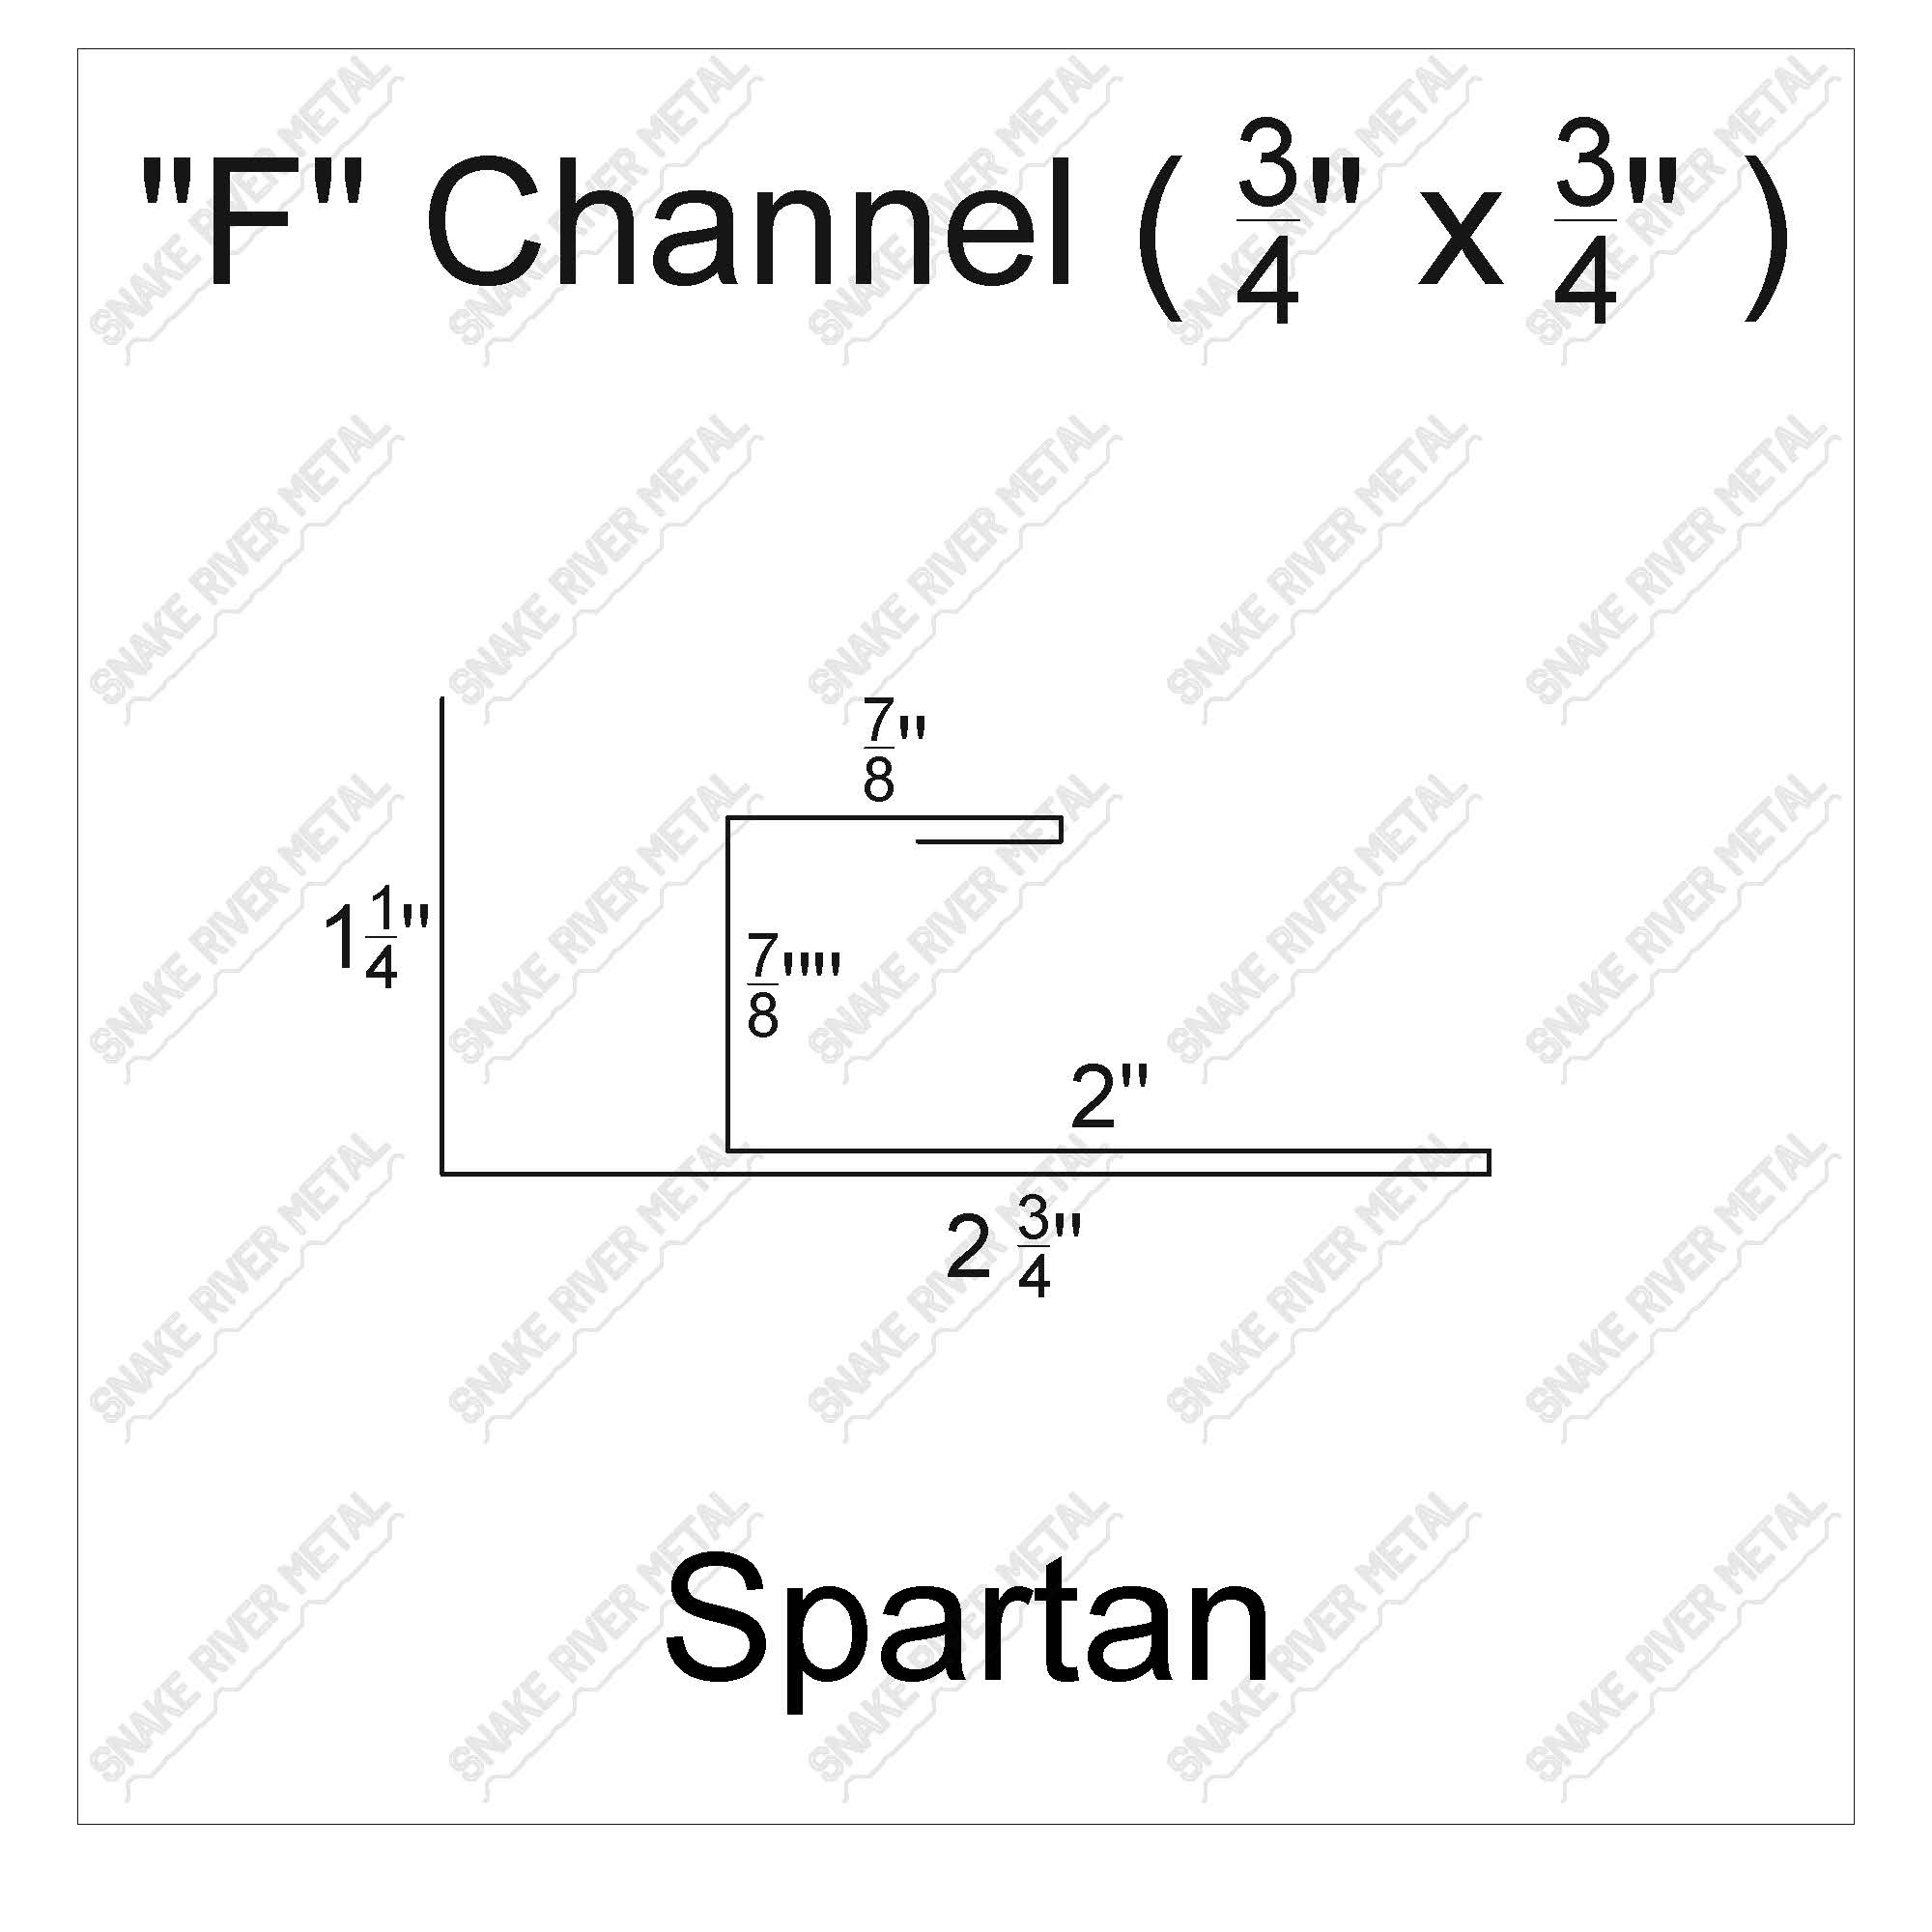 F Channel - SpartanTrim